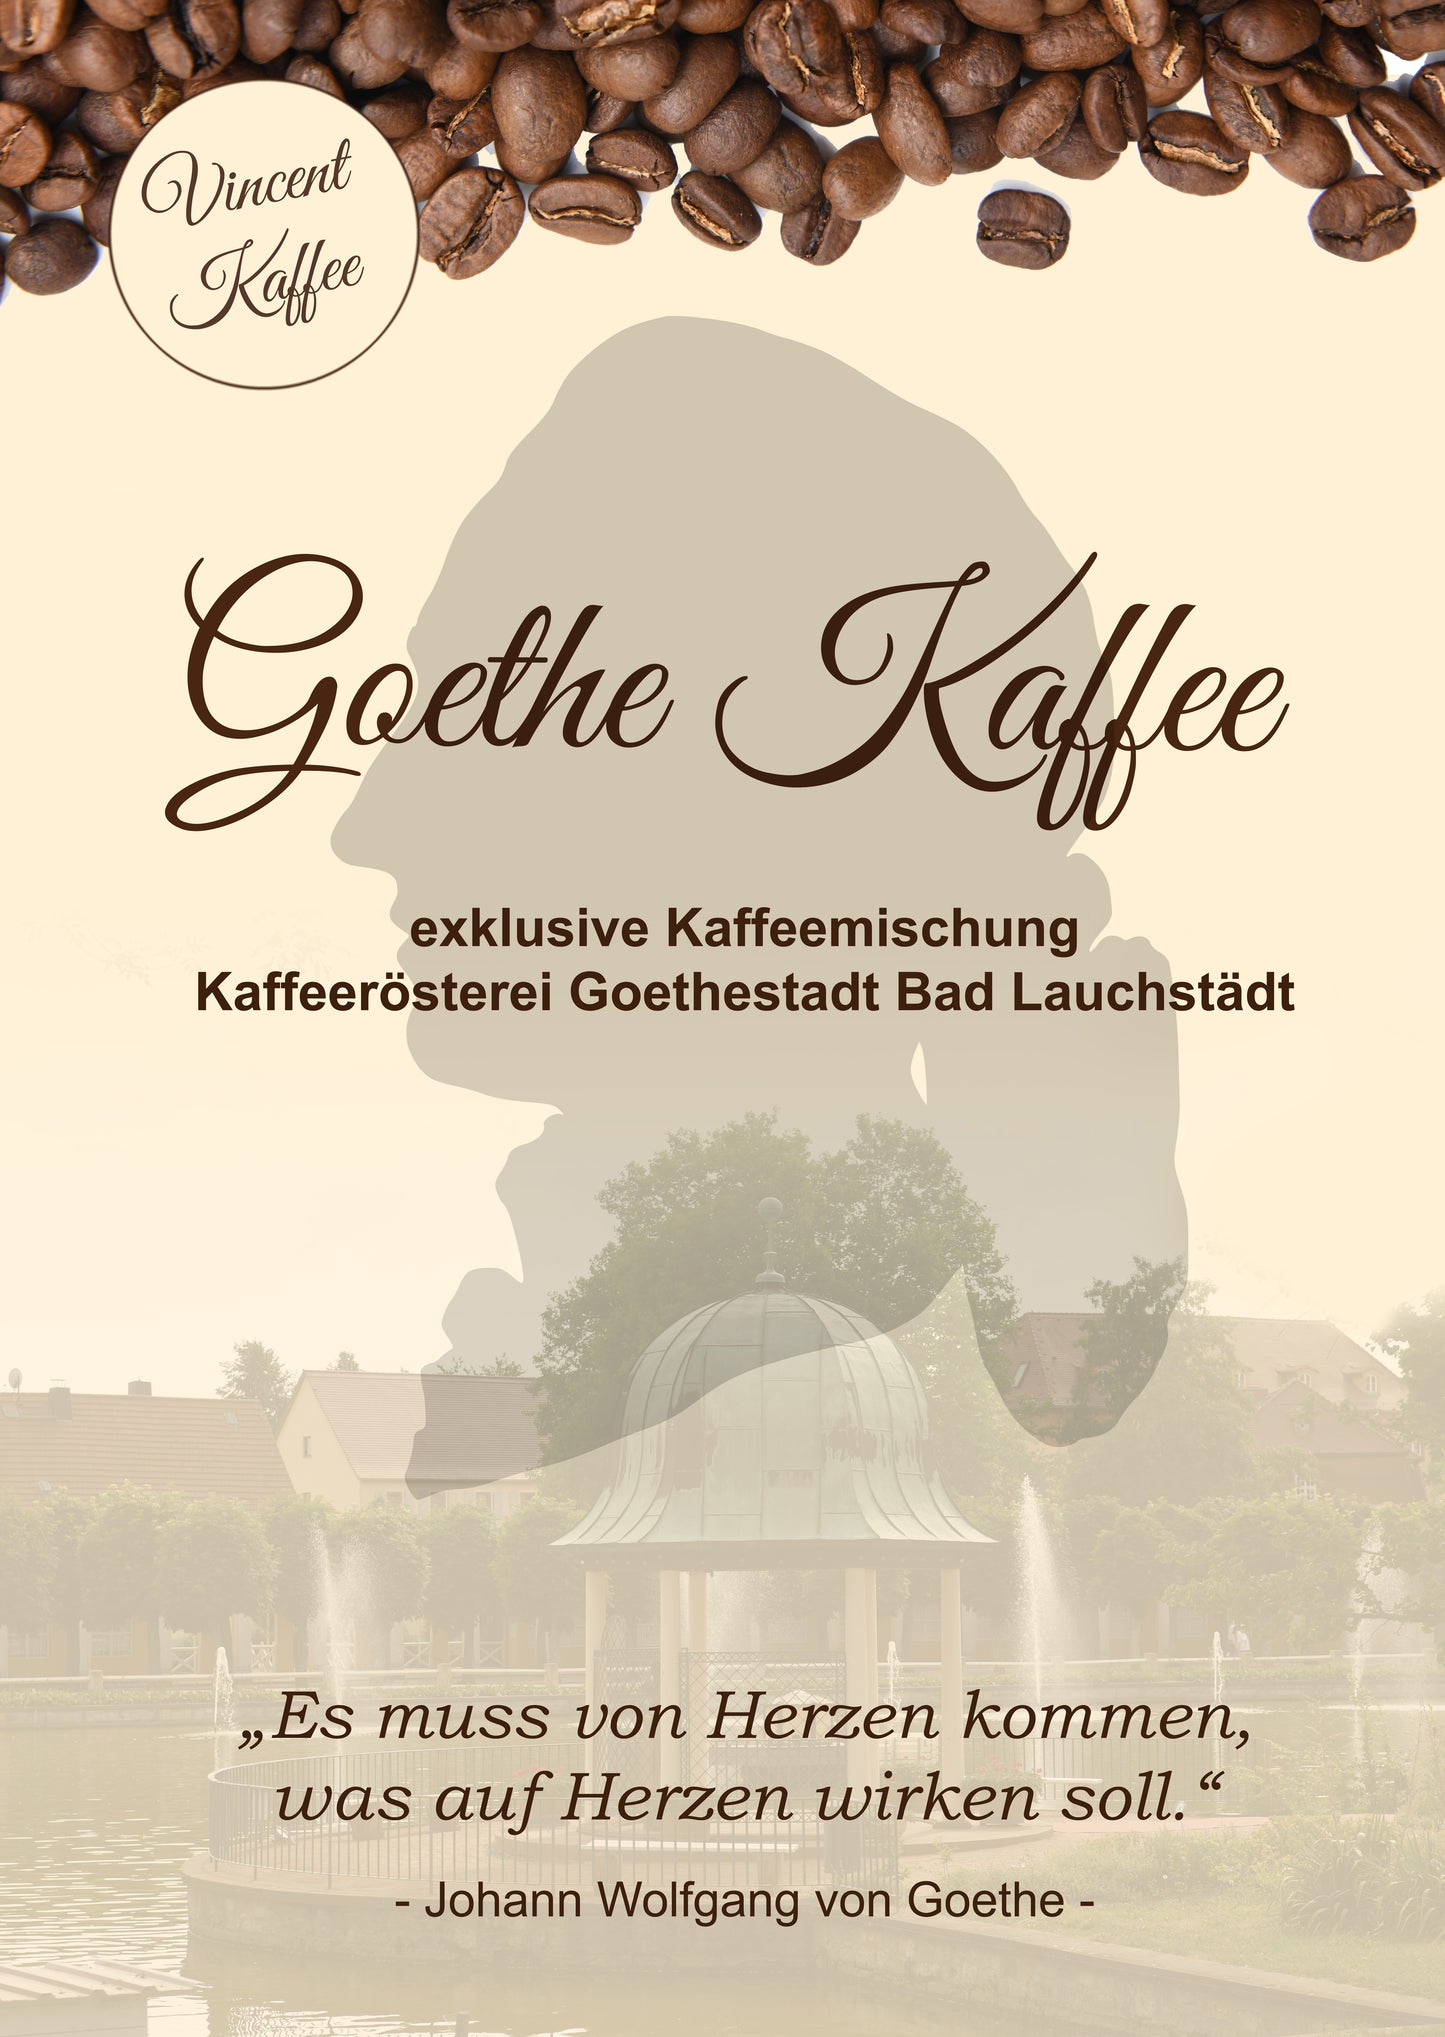 Vincent Kaffee - Goethe Kaffee Geschenkbox